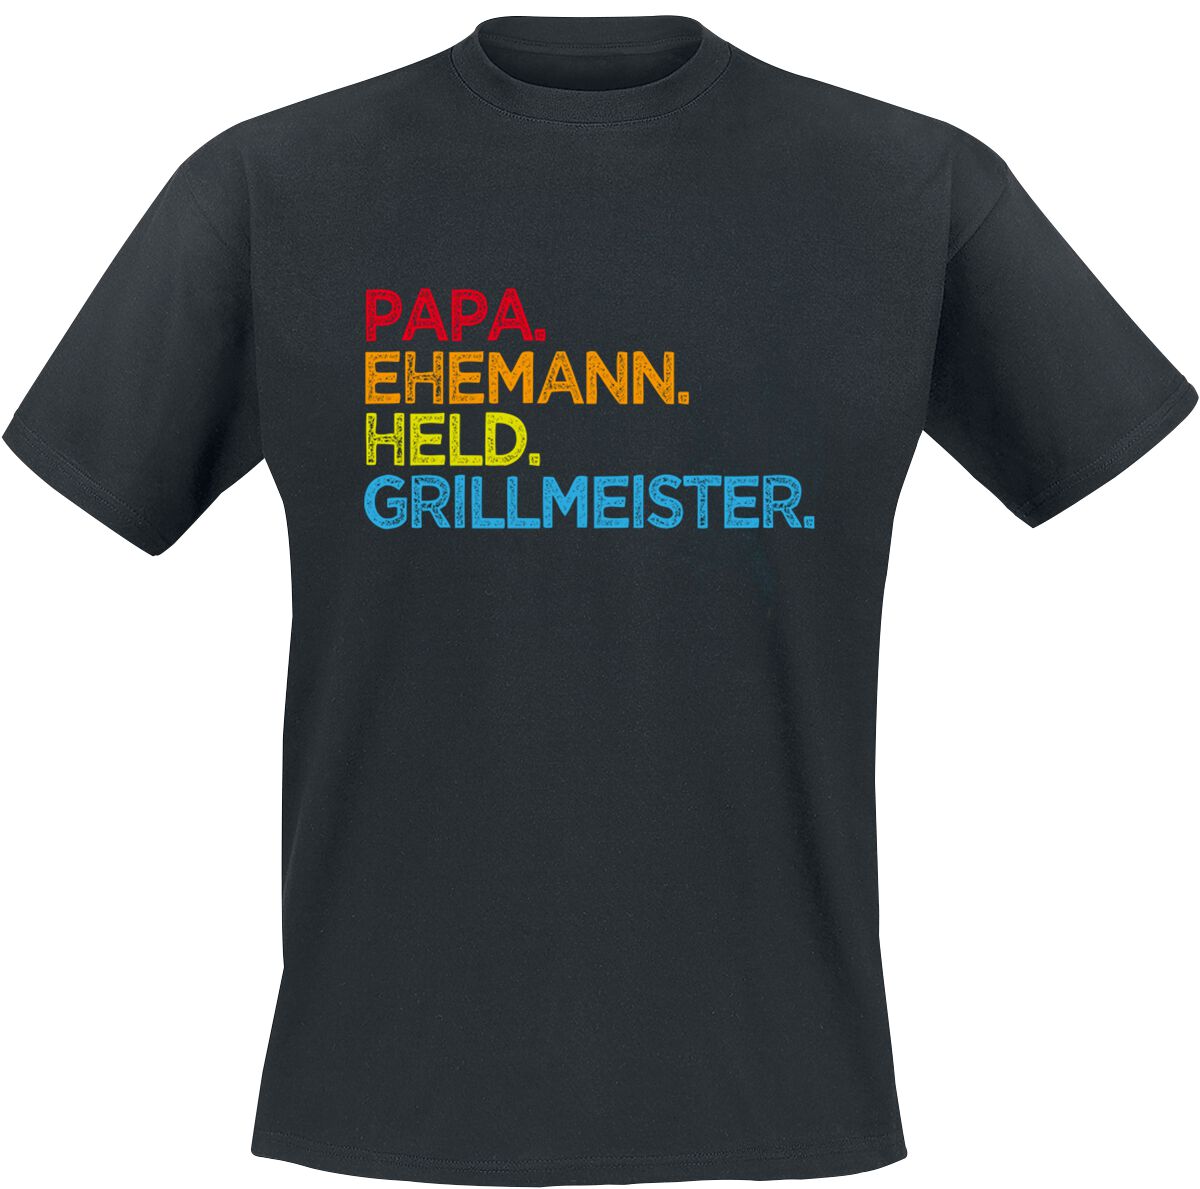 Familie & Freunde T-Shirt - Papa. Ehemann. Held. Grillmeister - S bis 5XL - für Männer - Größe S - schwarz